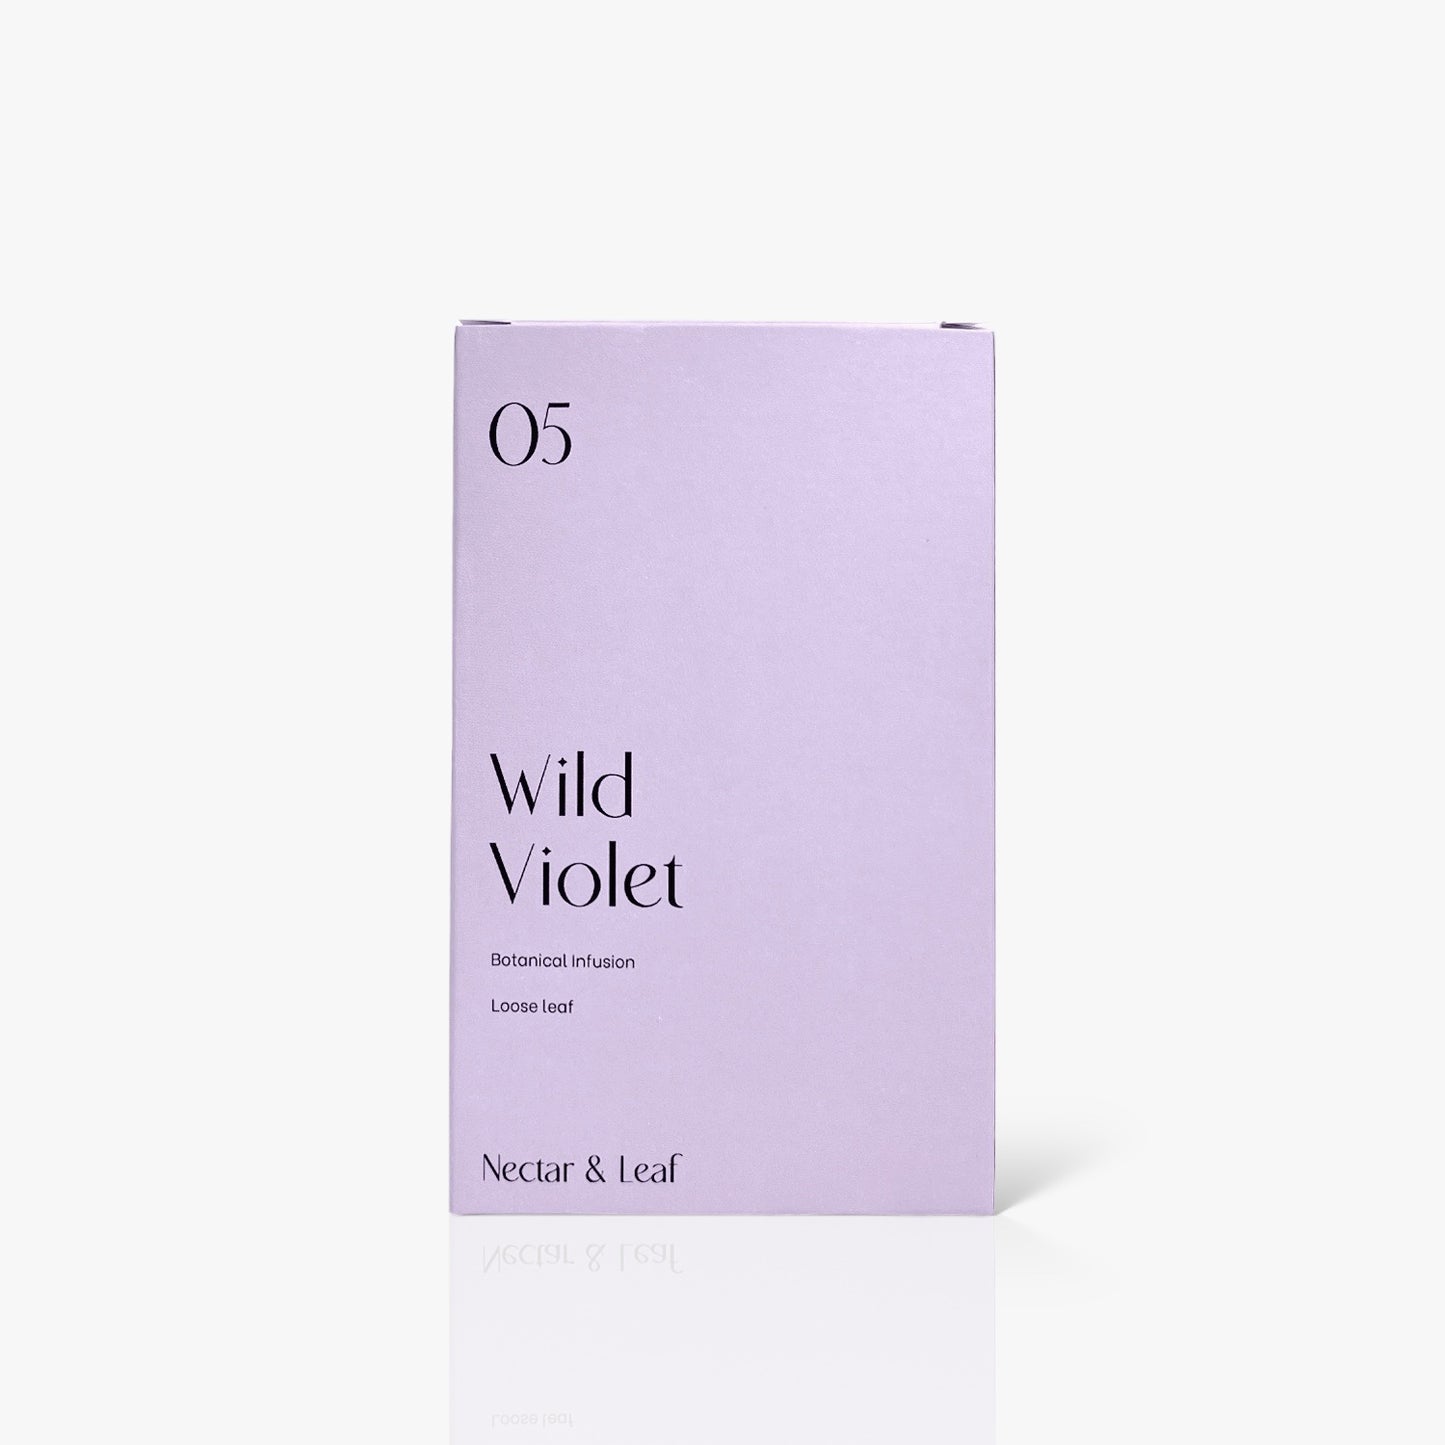 05 Wild Violet